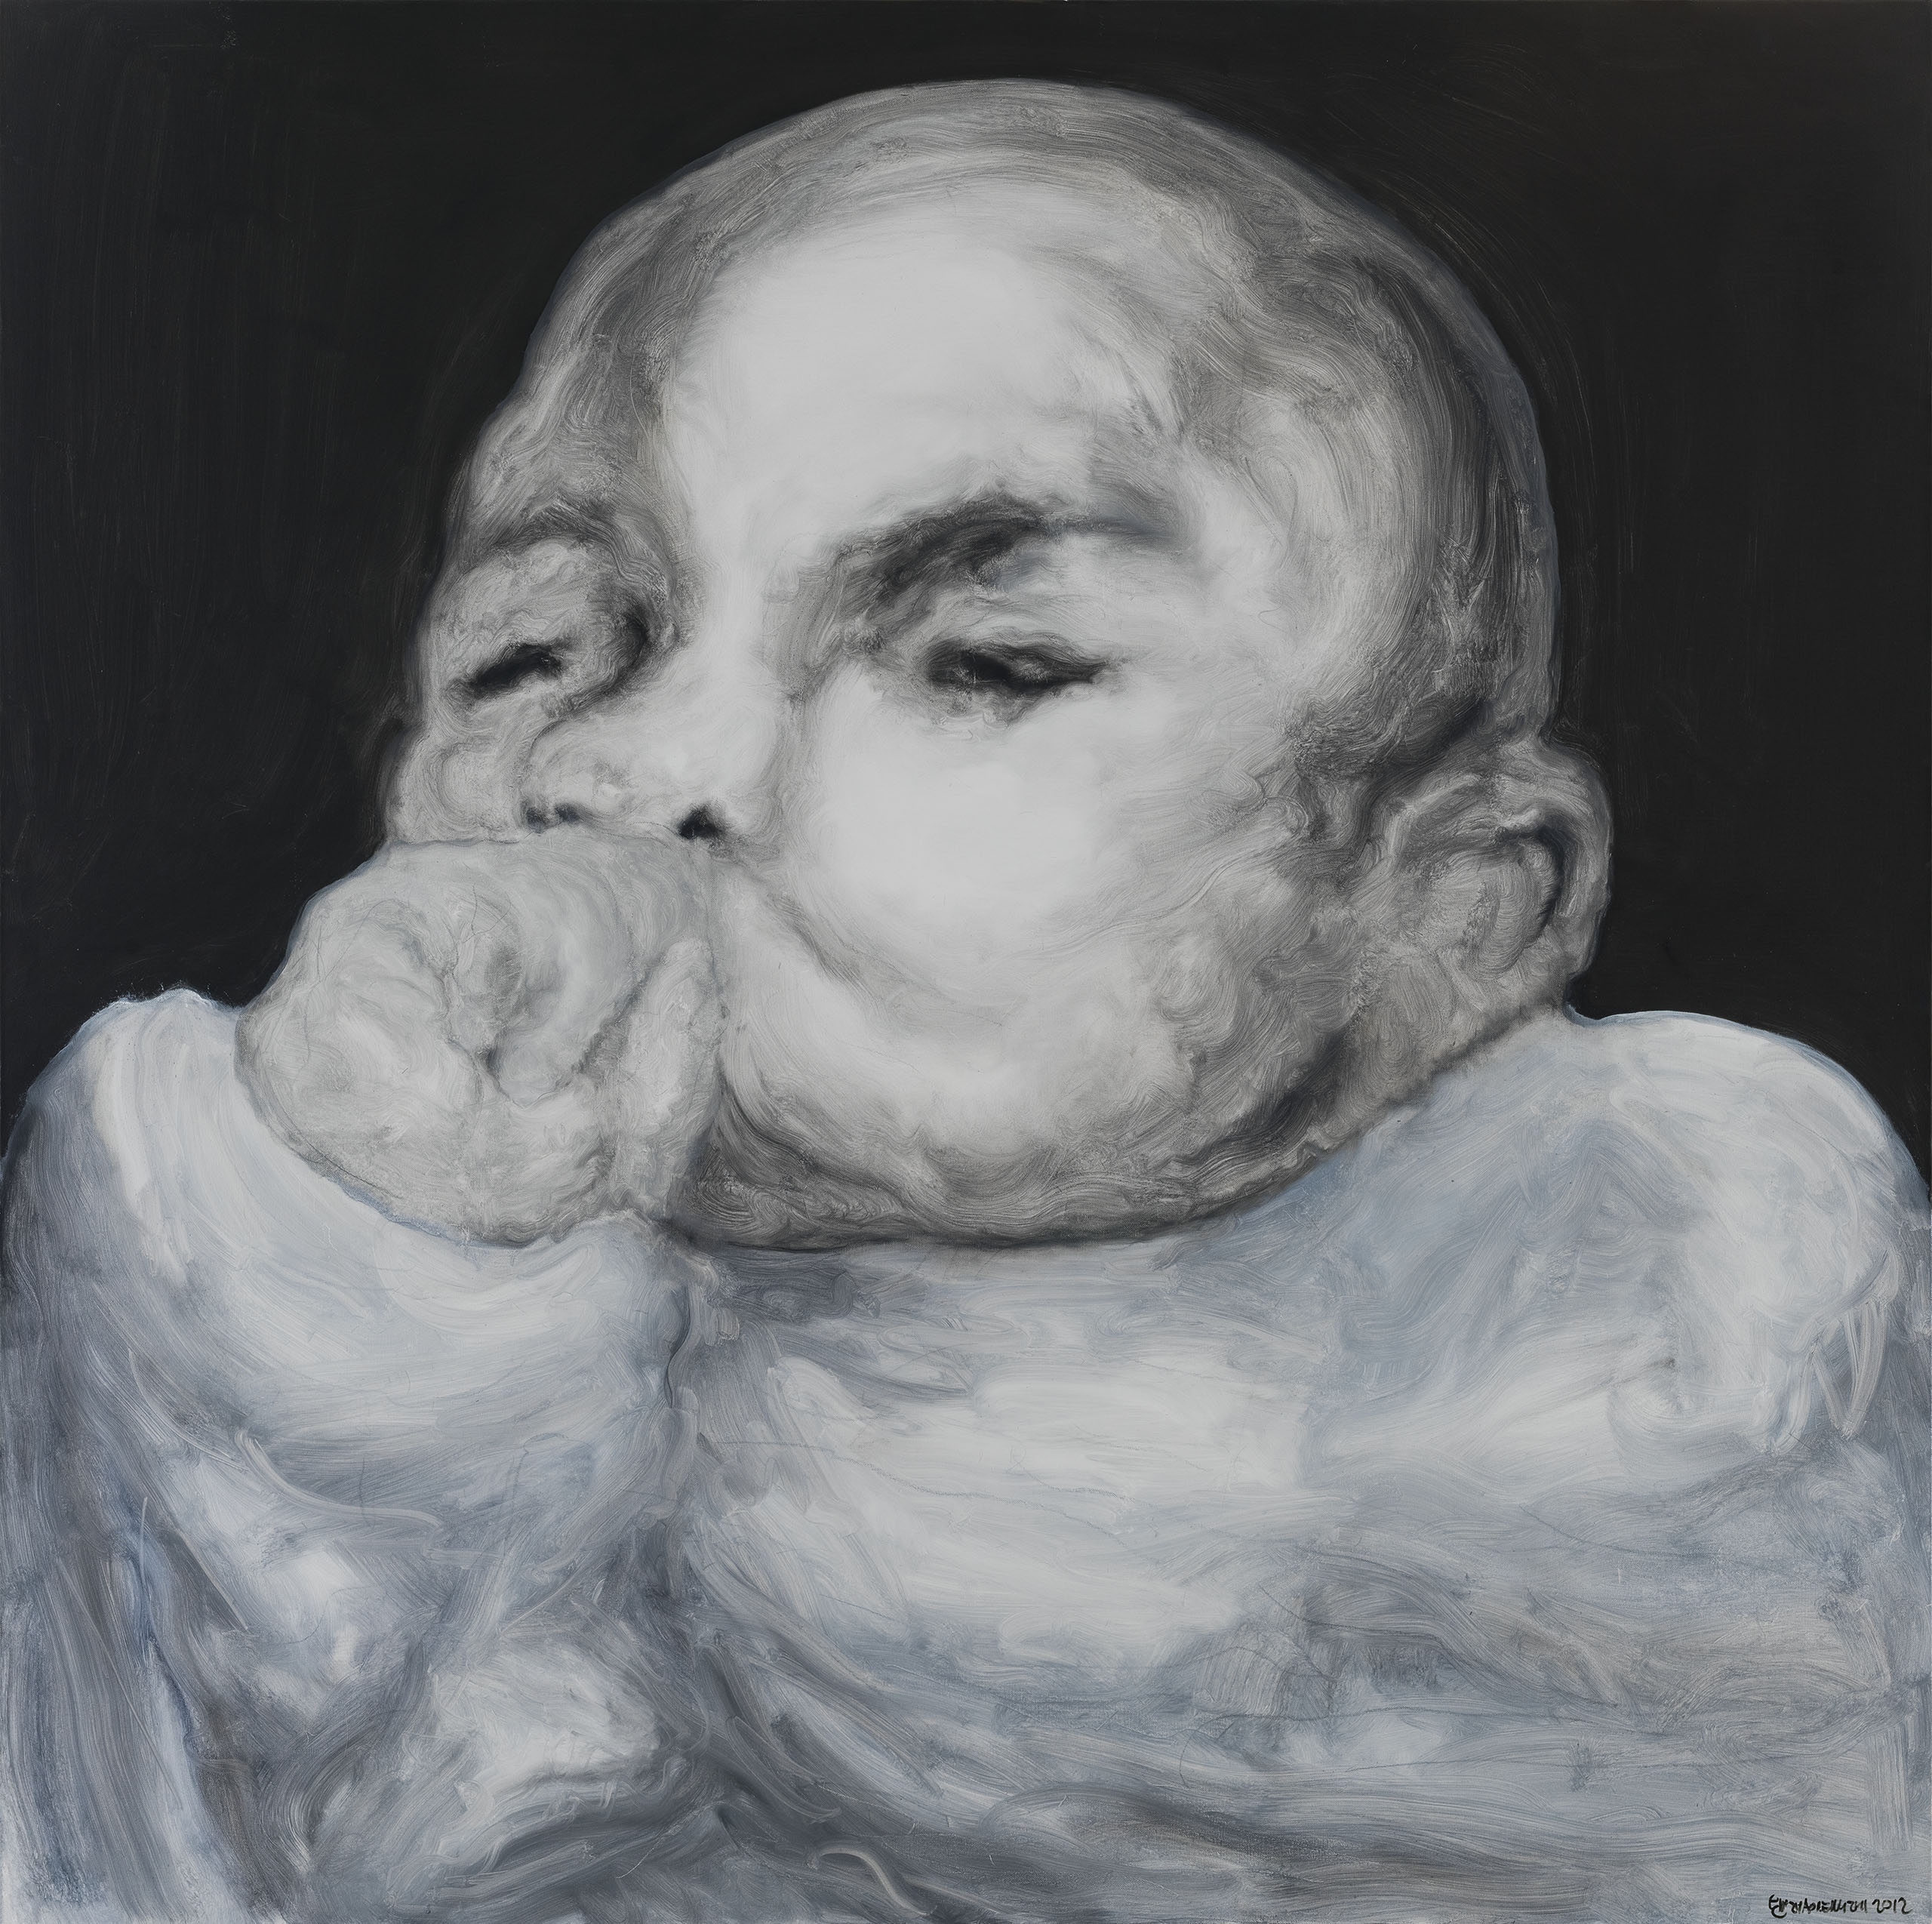 婴儿 No.2, Oil on canvas, 120x120cm, 2012